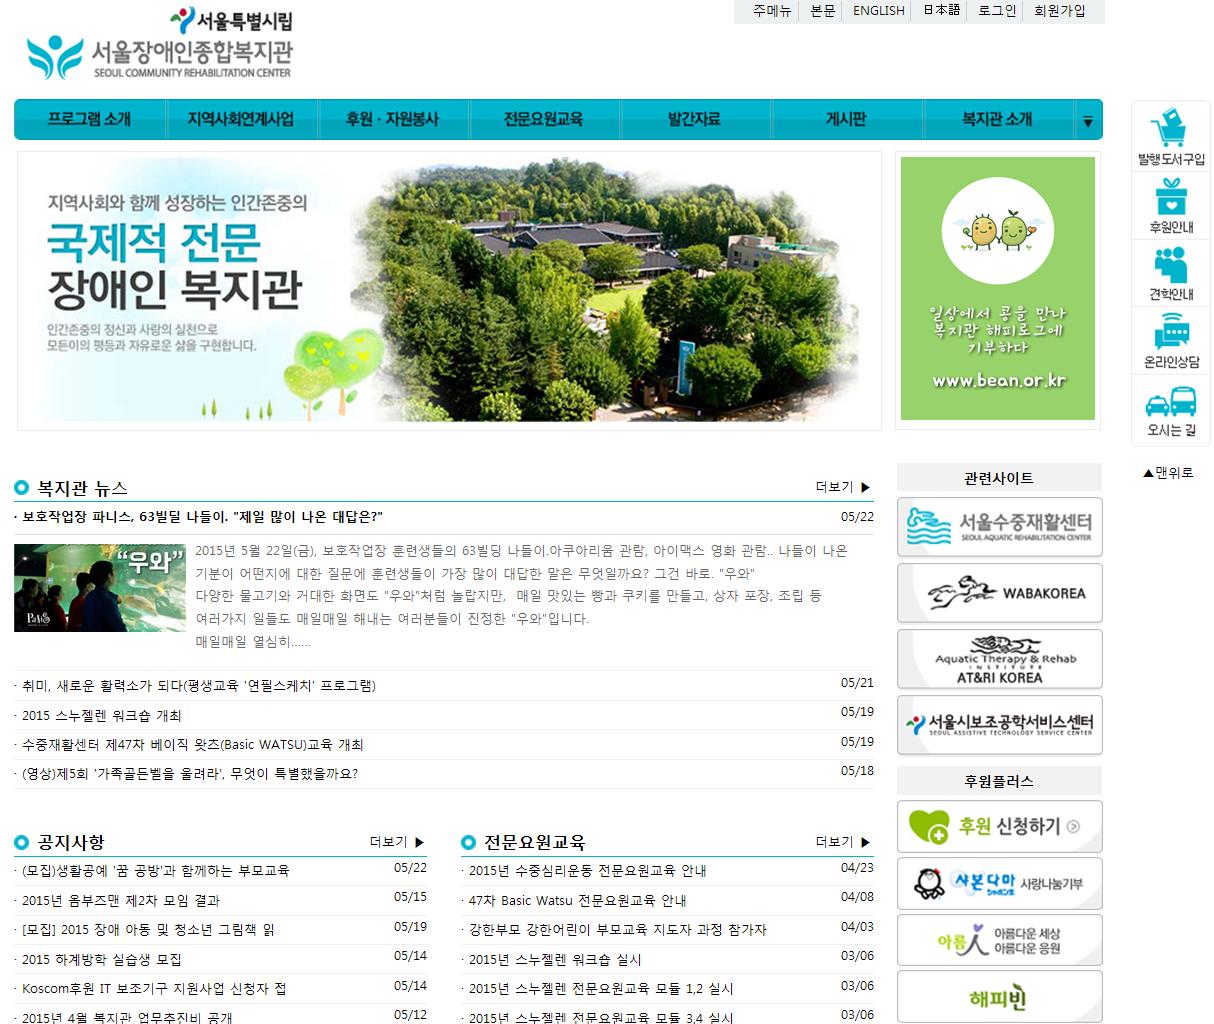 서울장애인종합복지관 홈페이지 스크릿샷